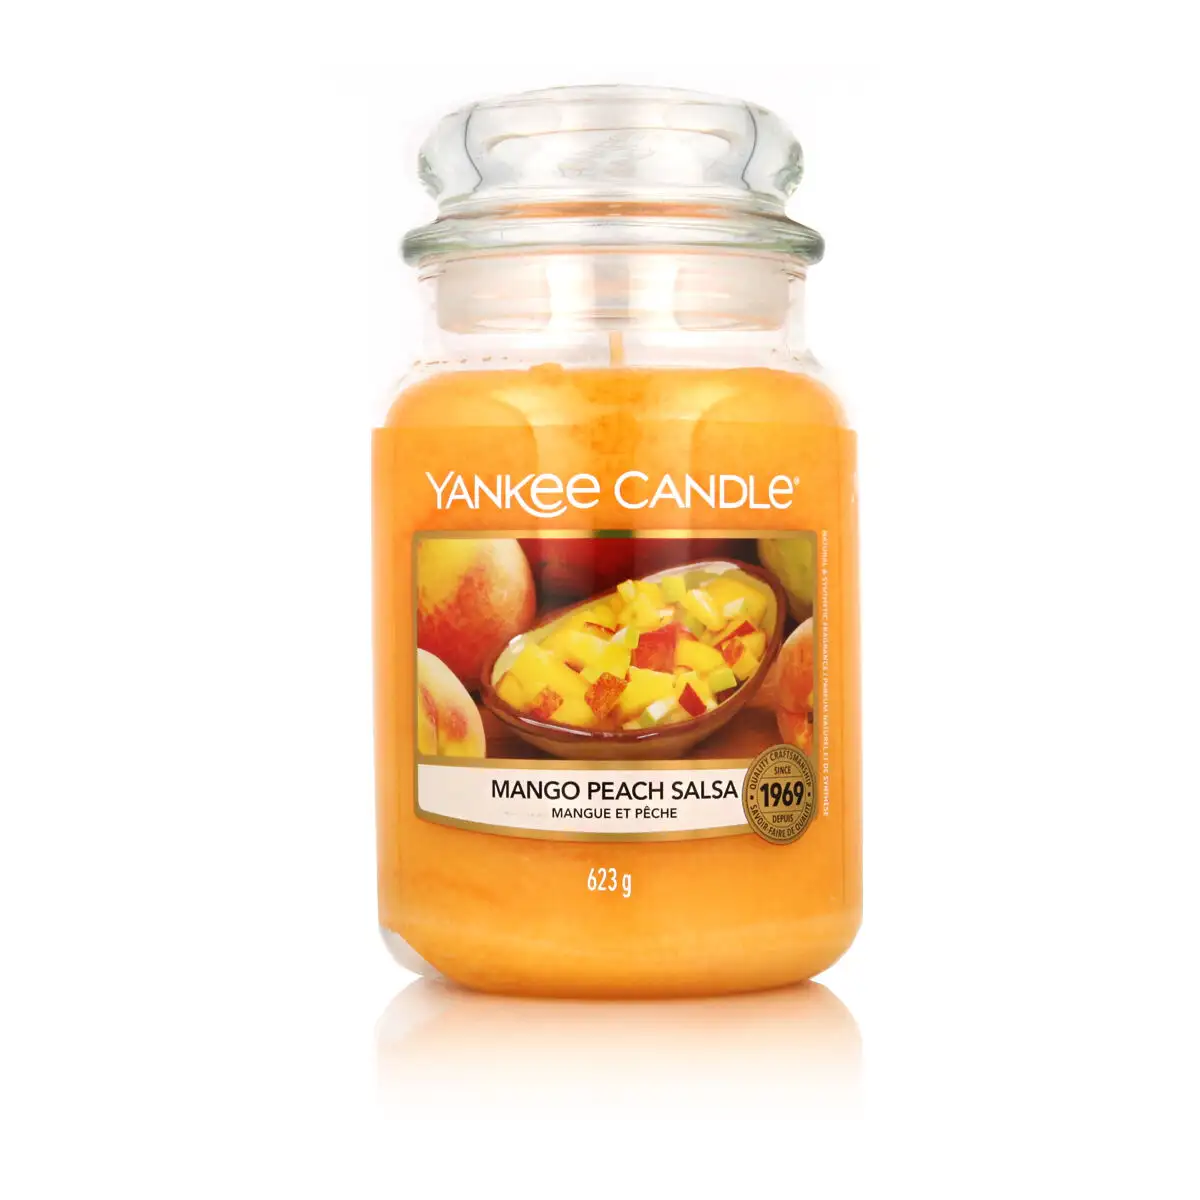 Bougie parfumee yankee candle mango peach salsa 623 g_2878. DIAYTAR SENEGAL - L'Art de Choisir, l'Art de Vivre. Parcourez notre boutique en ligne et découvrez des produits qui transforment chaque choix en une expérience enrichissante.